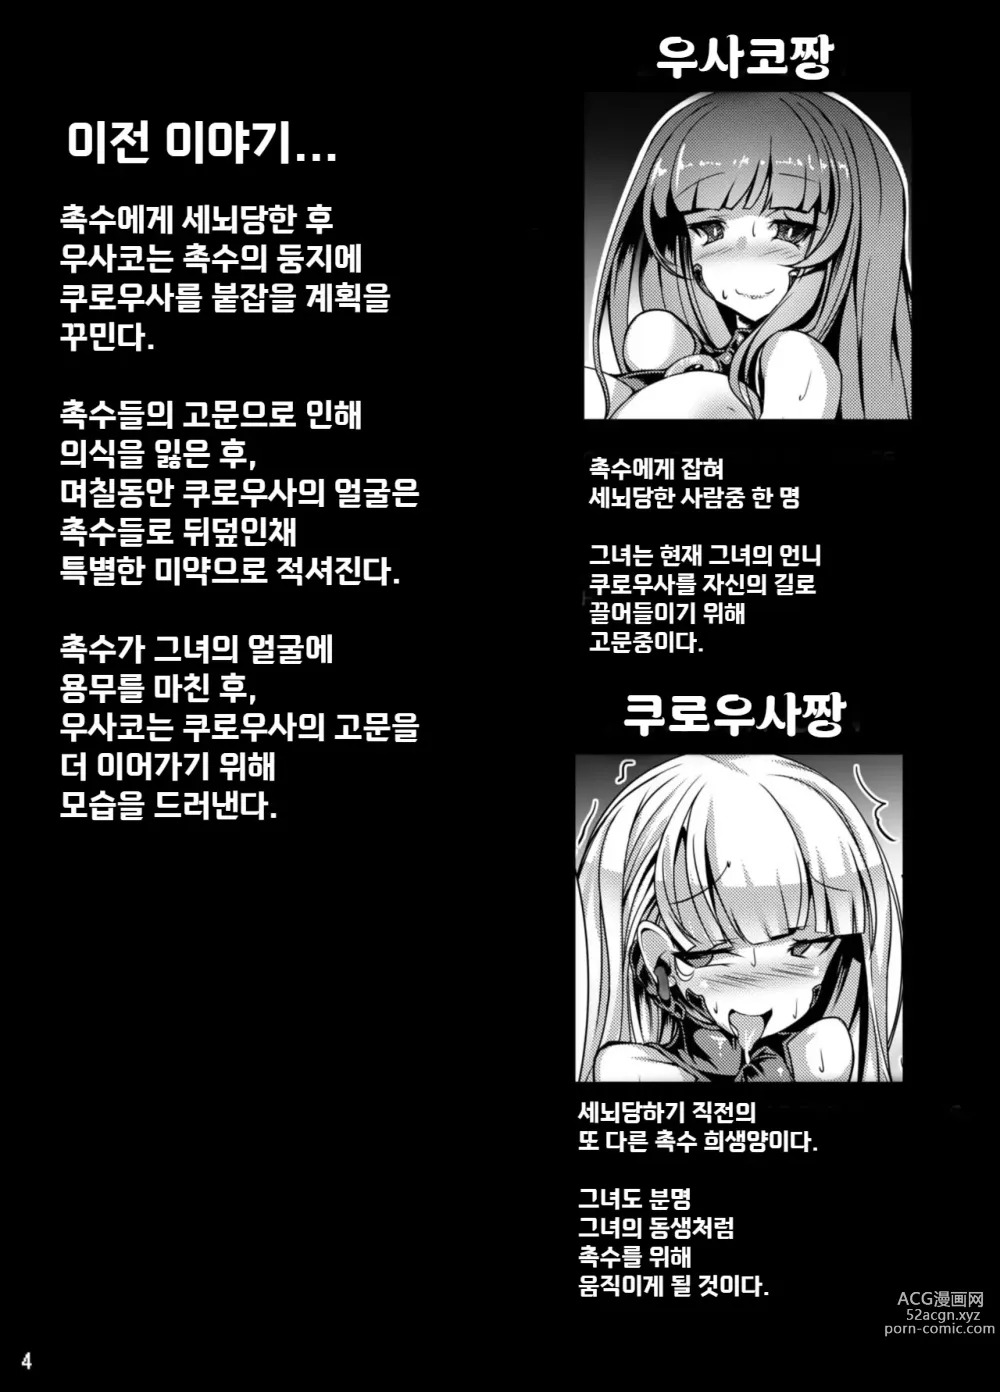 Page 5 of doujinshi 쿠로우사짱이 촉수님의 암컷이 되는 책